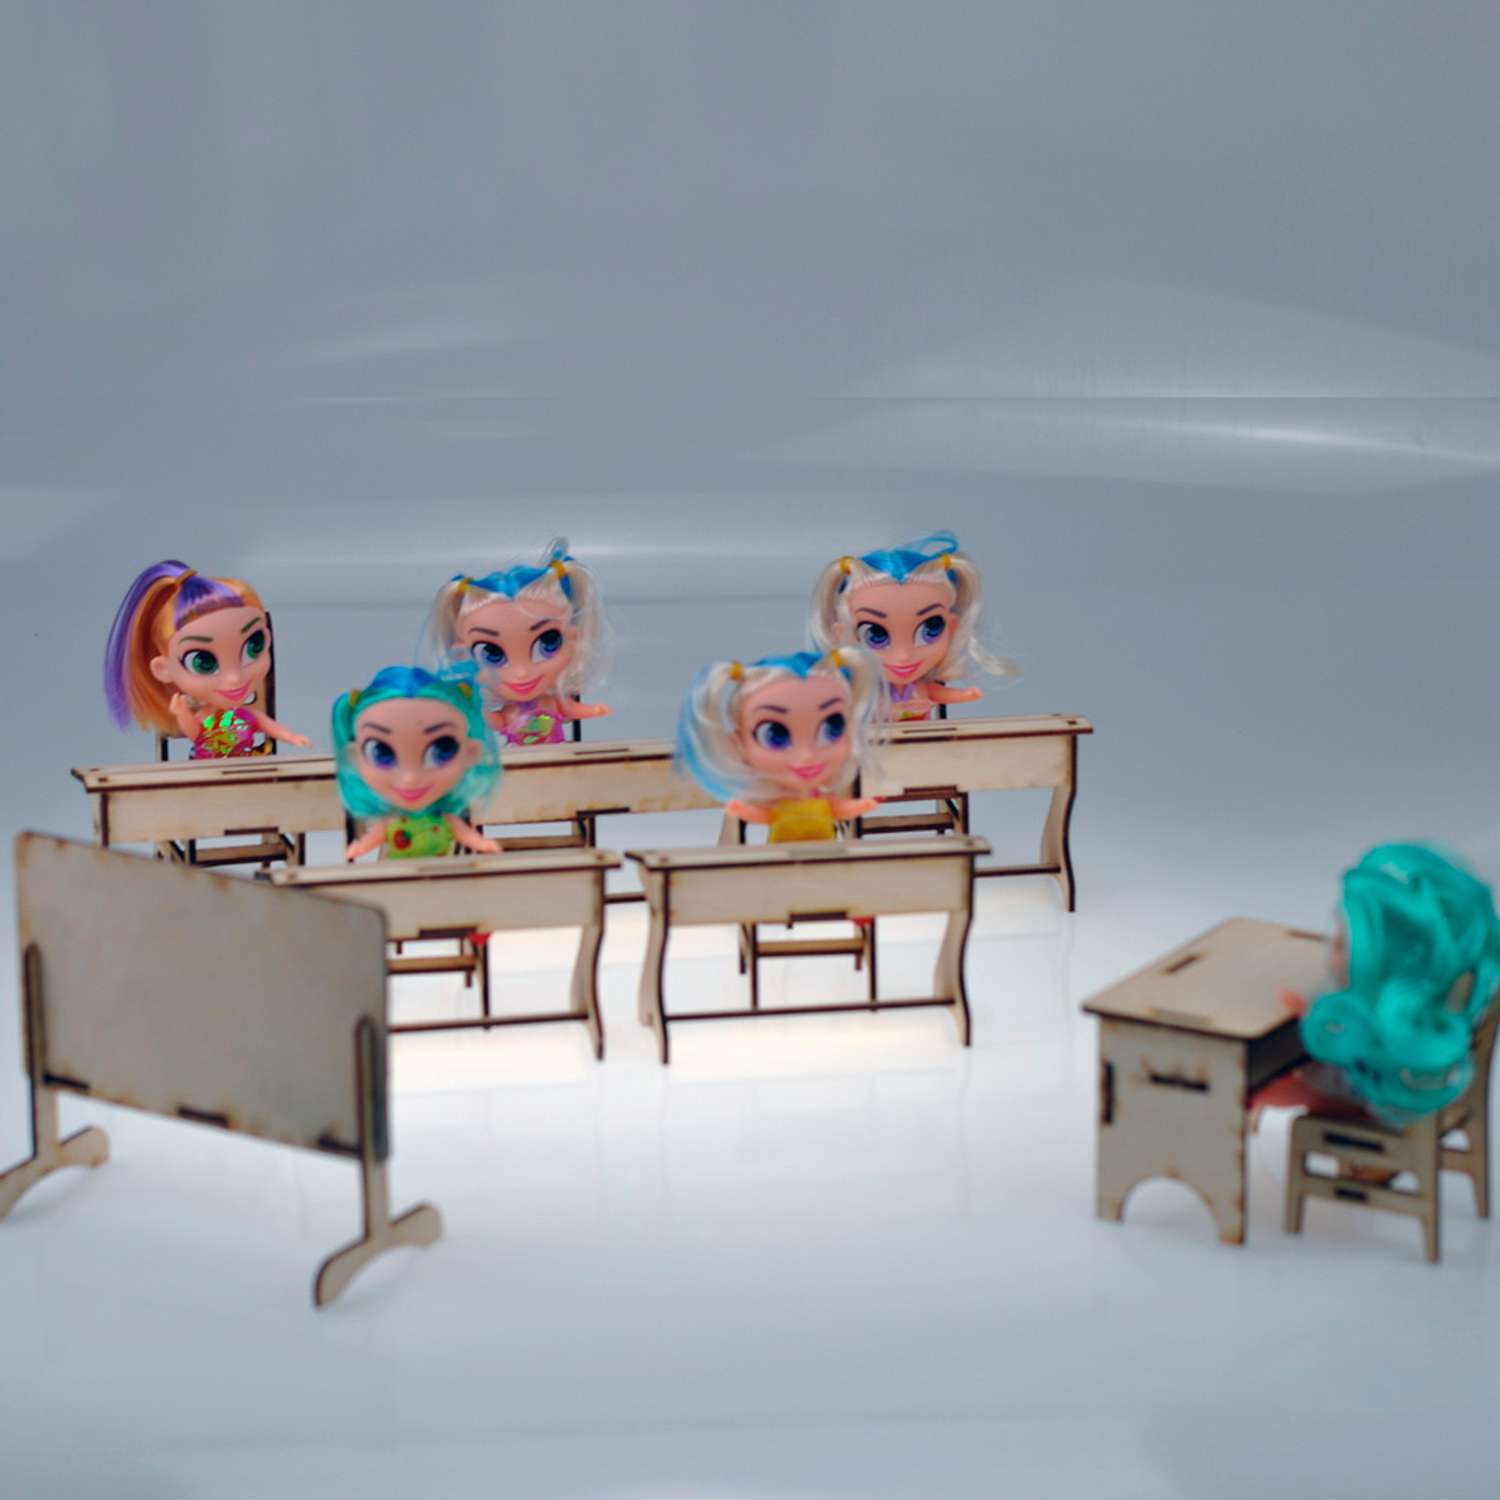 Игровой деревянный класс Amazwood 5 парт- учительский стол - доска - 6 стульев - 6 кукол AW1006 - фото 3